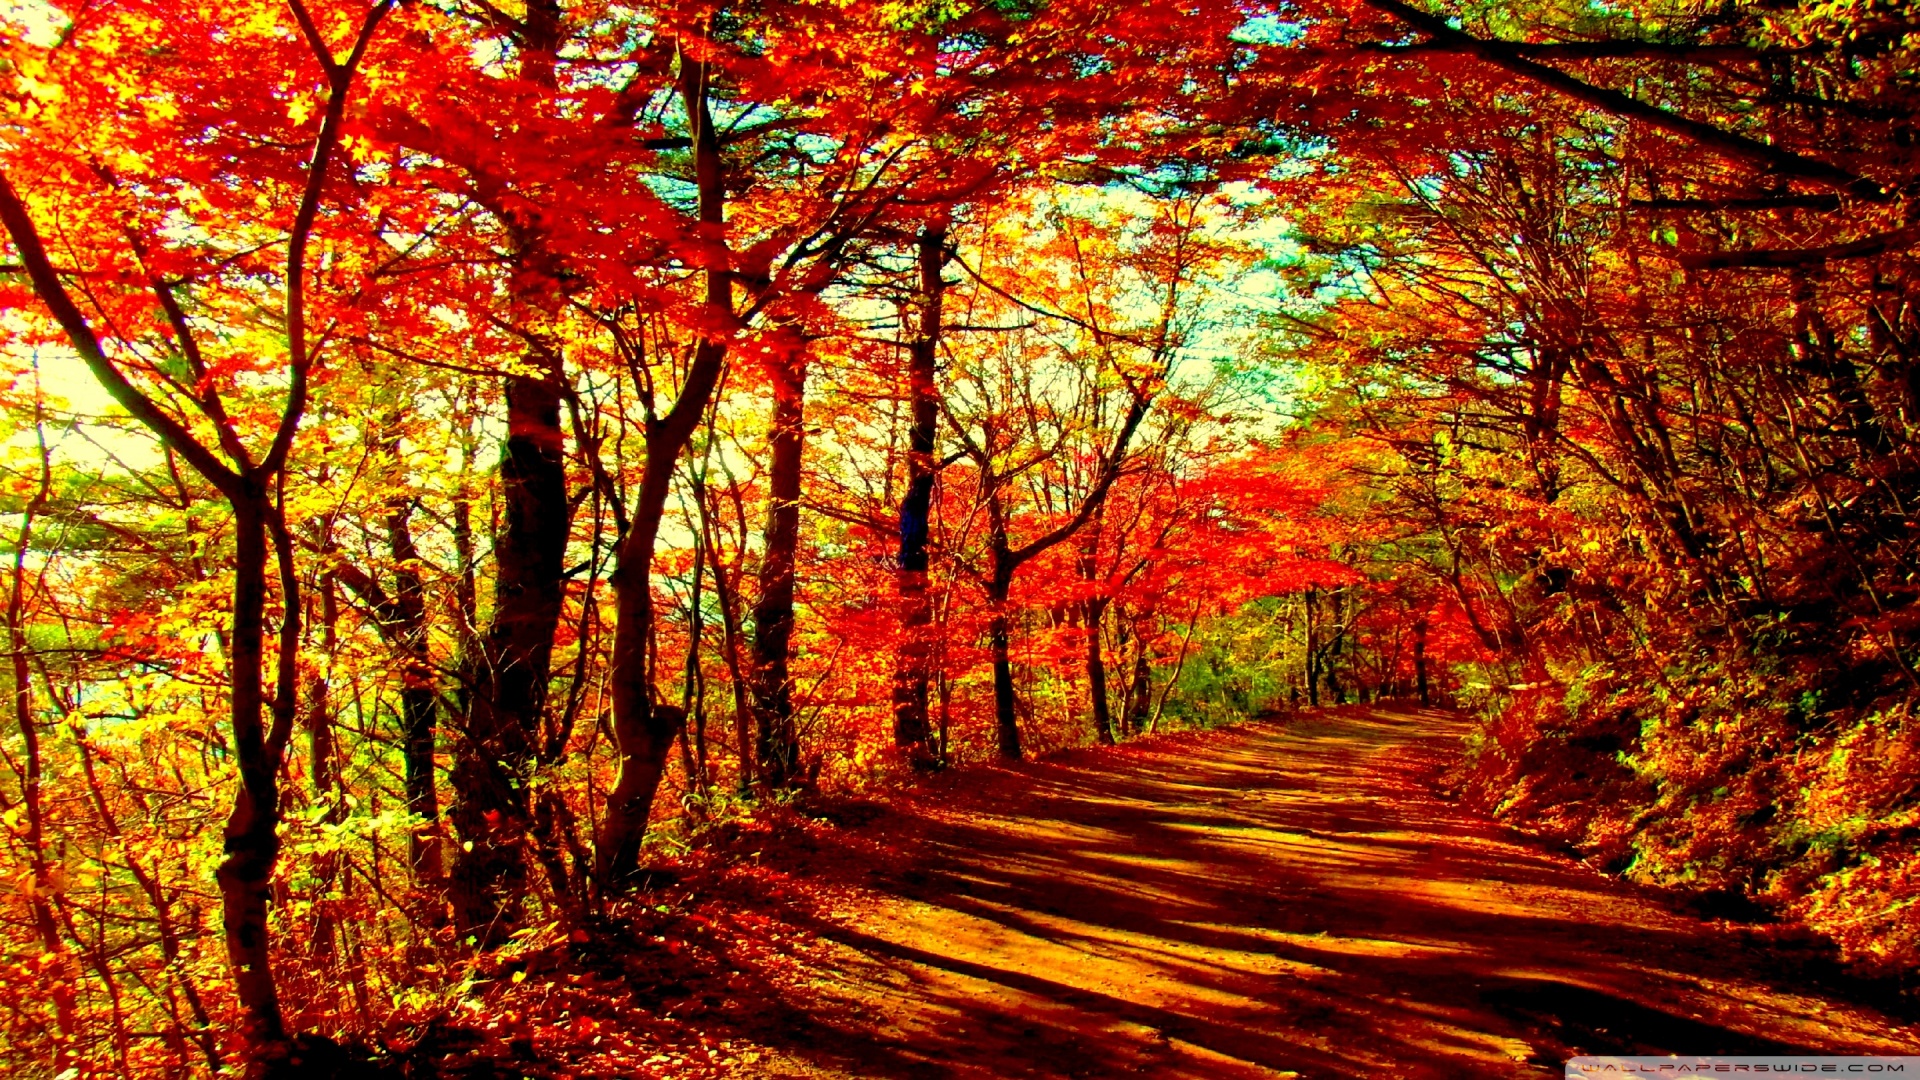 autumn forest wallpaper,tree,natural landscape,nature,leaf,northern hardwood forest